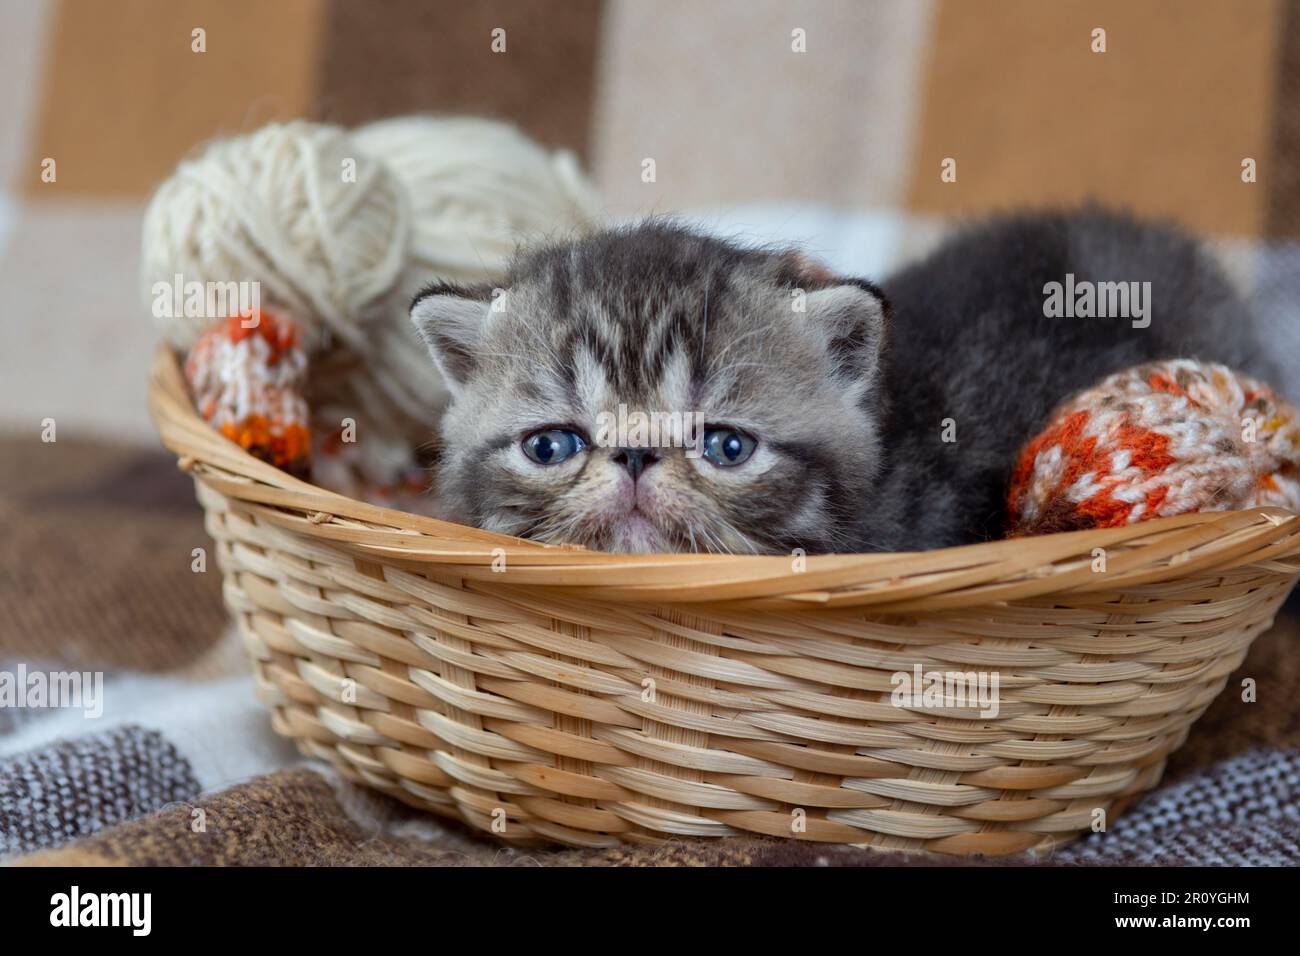 Ein süßes, grau gestreiftes Kätzchen einer exotischen Kurzhaarrasse sitzt in einem Korb mit Karomuster und spielt mit Fadenbällen, Nahaufnahme. Stockfoto